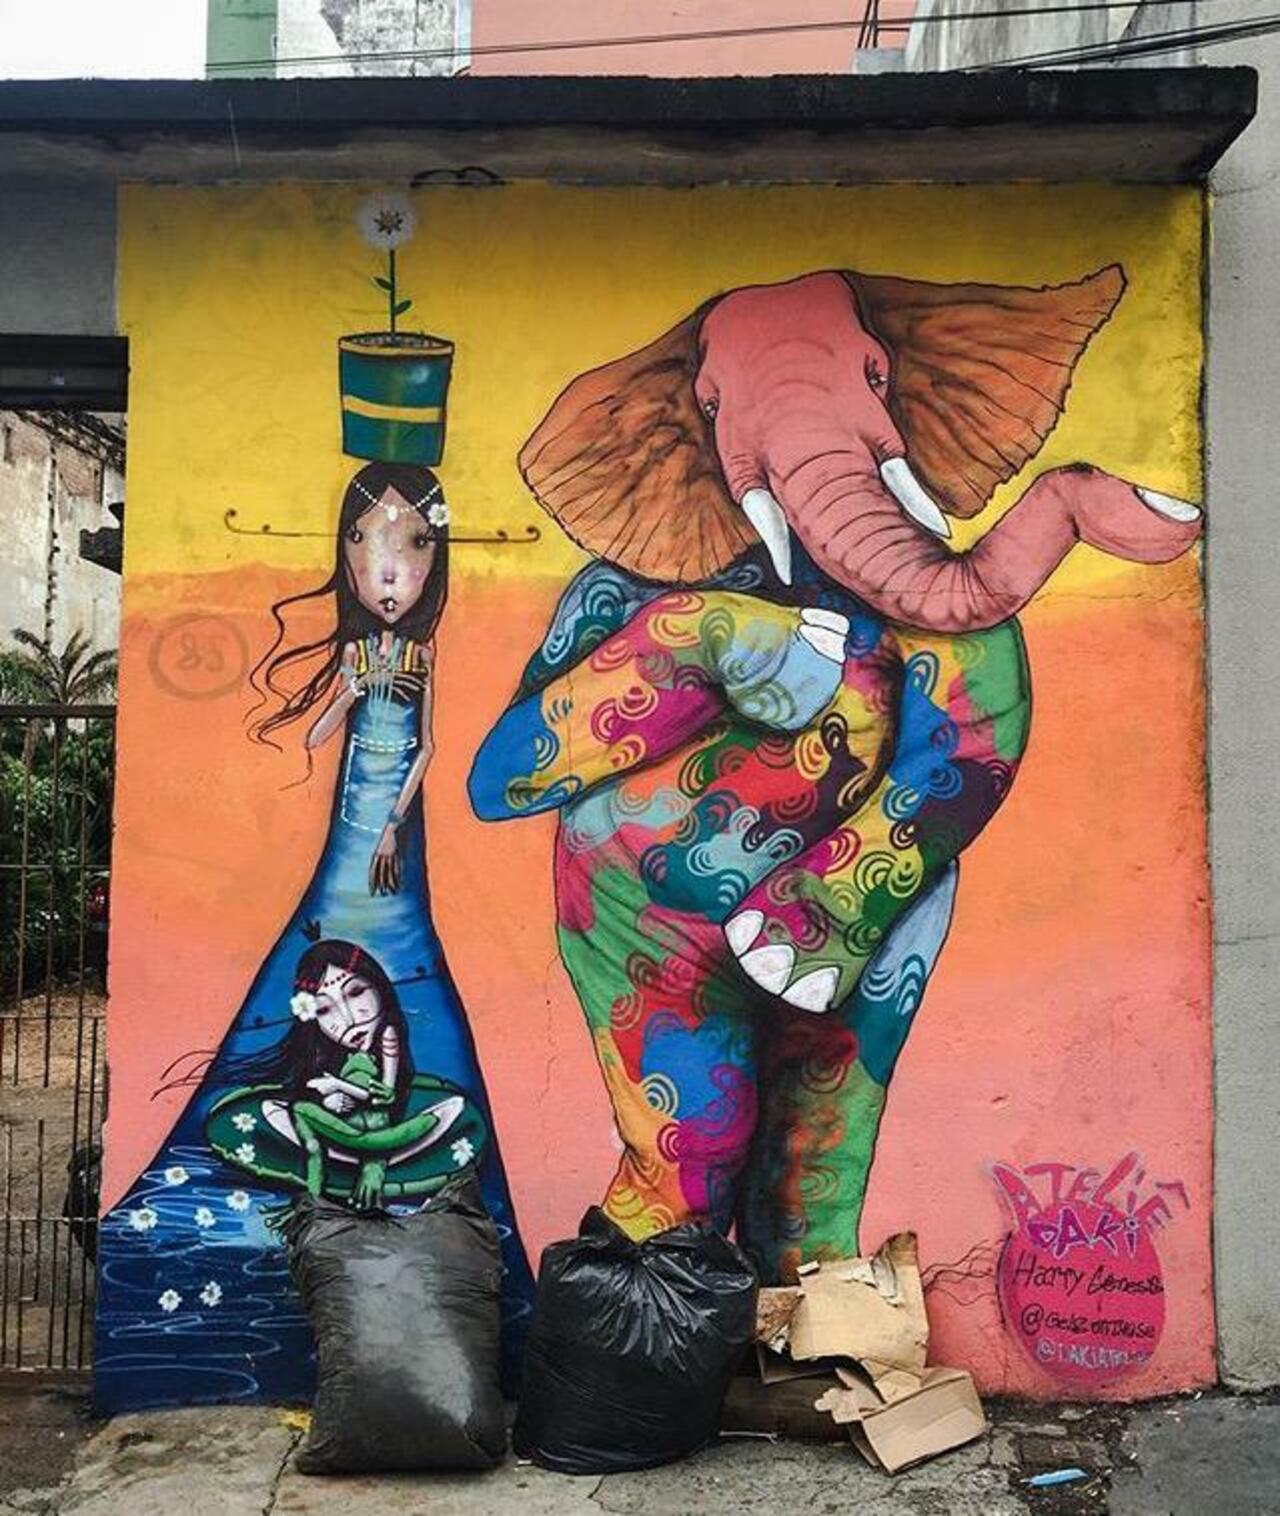 Street Art by Harry Geneis & Gelson in São Paulo 

#art #mural #graffiti #streetart http://t.co/2mobRfBjFS